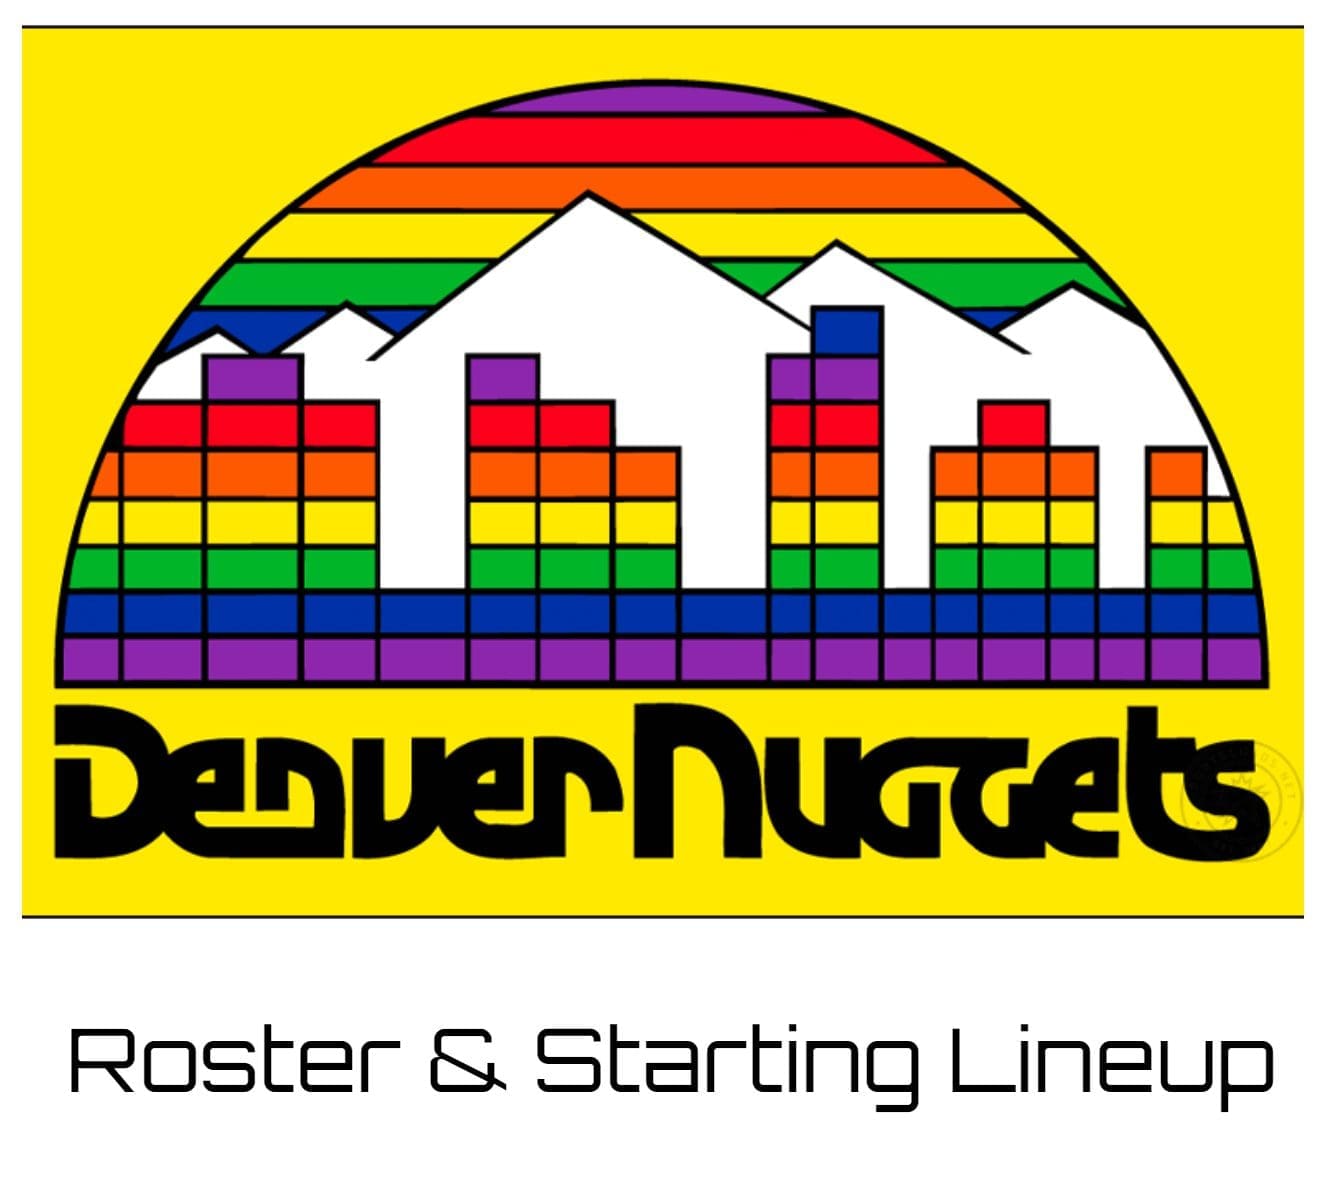 Denver Nuggets Roster